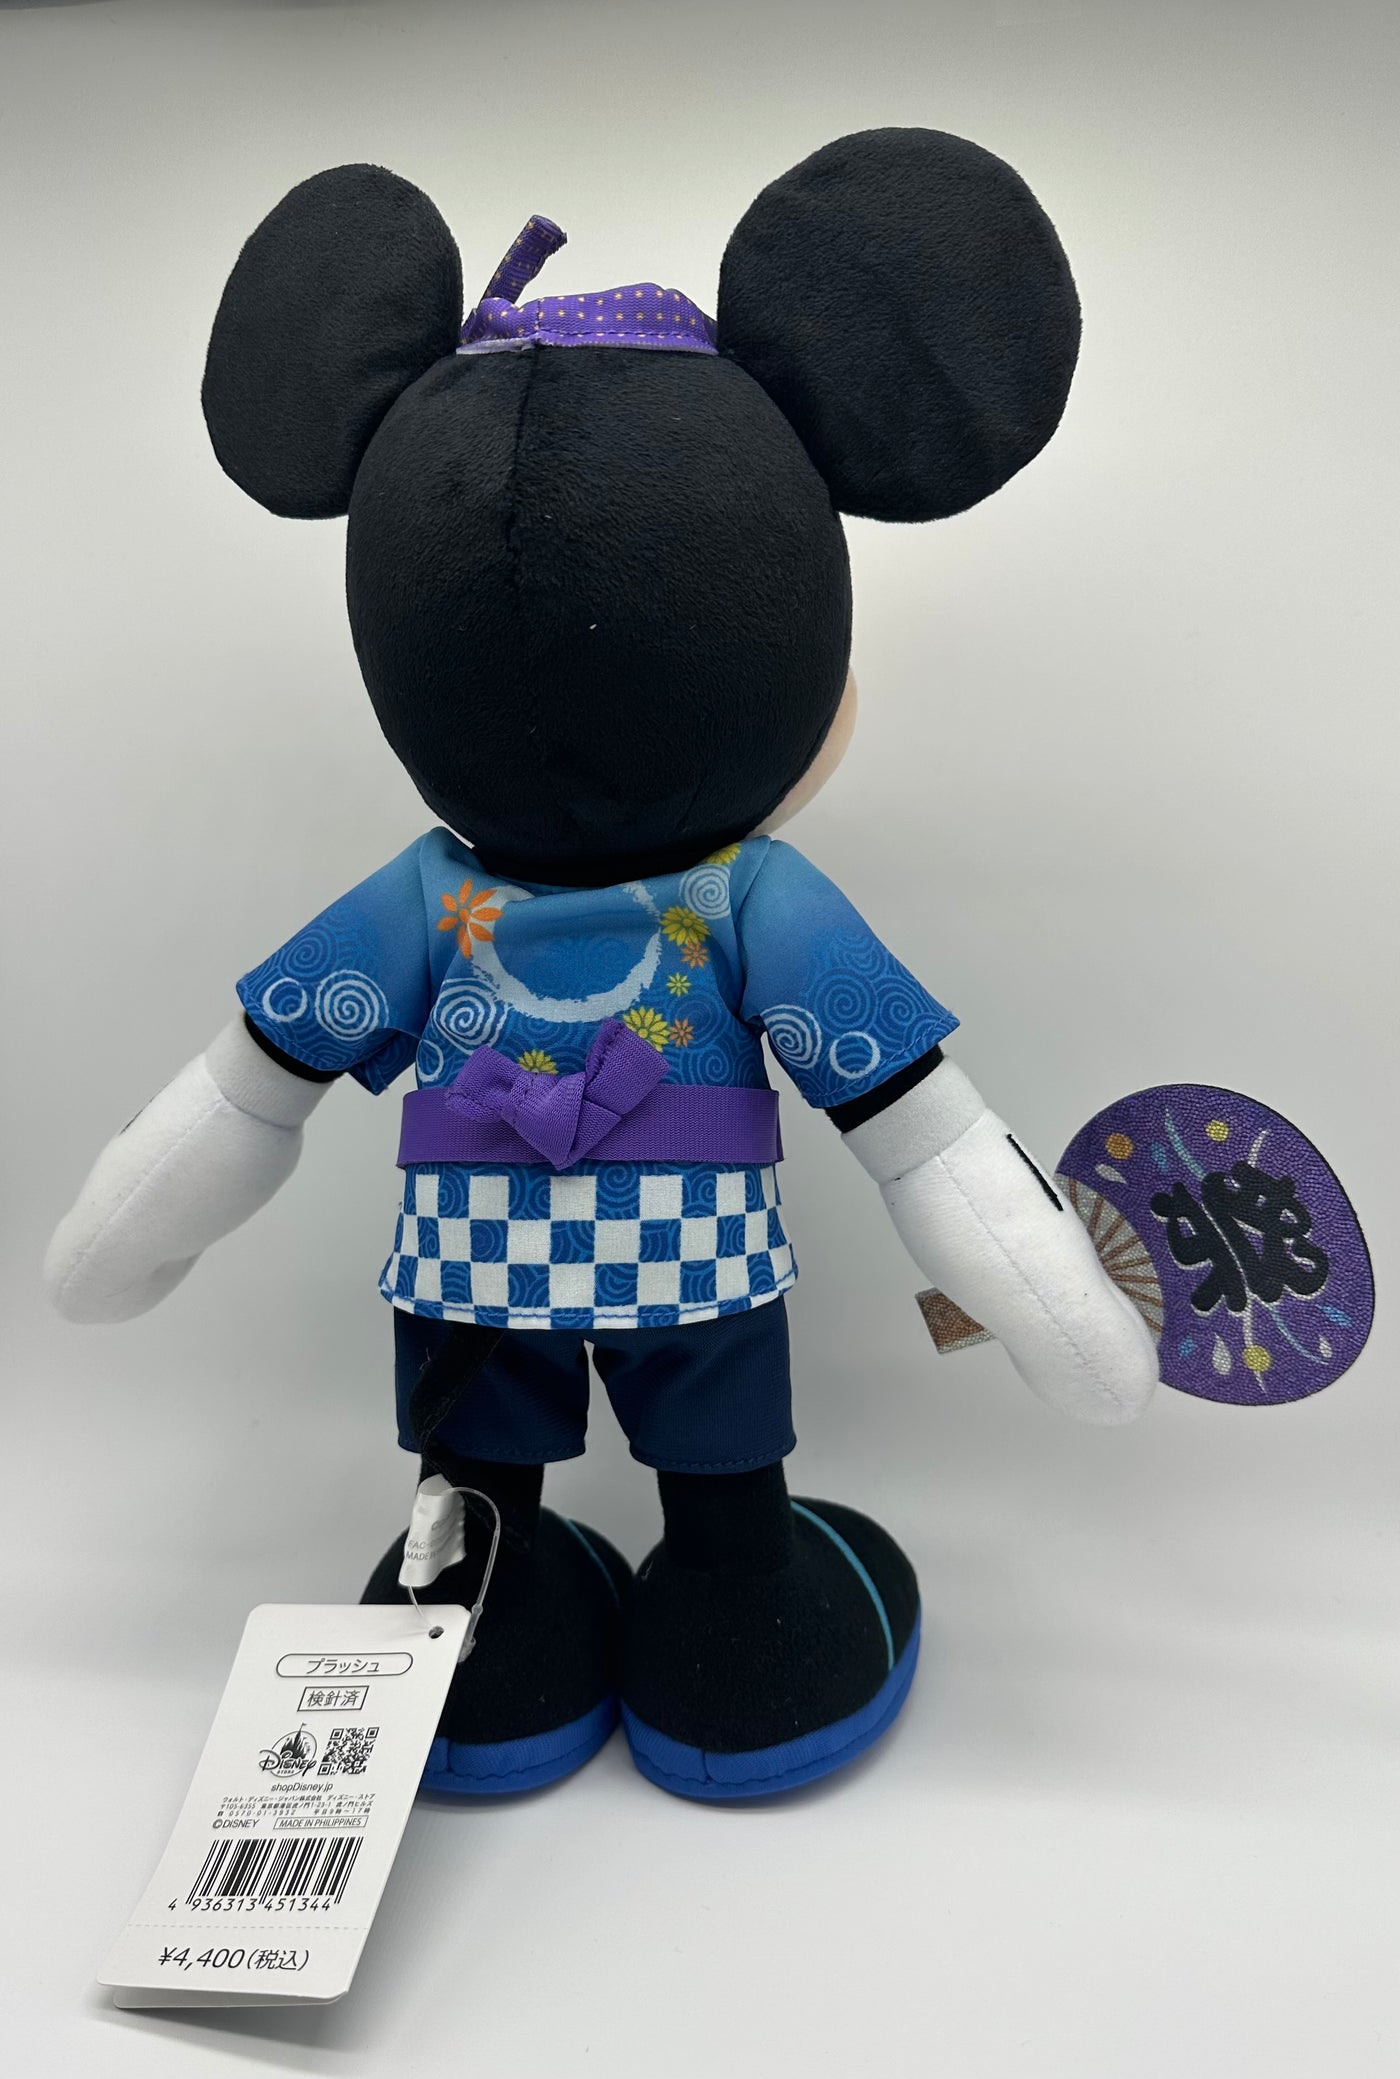 Disney Store Japan Mickey Festival Yukata Kimono Plush New with Tag